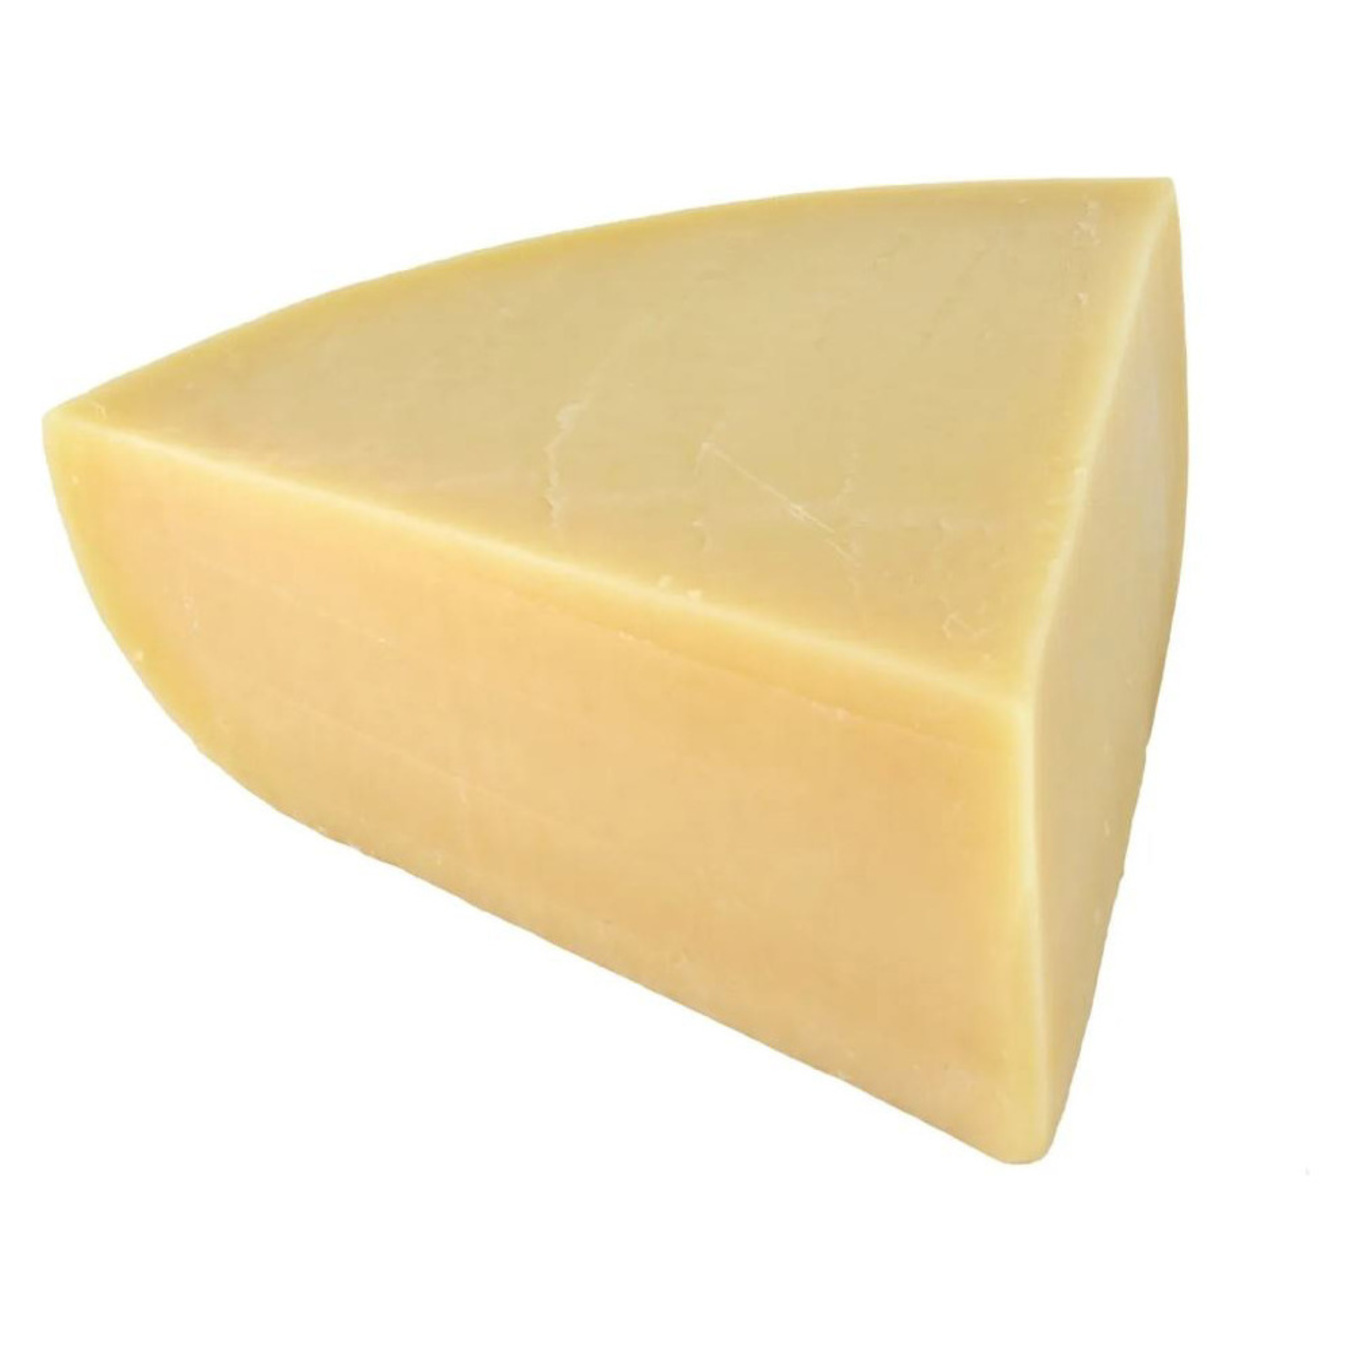 Rokiskio Goyus Parmesan cheese 40% by weight